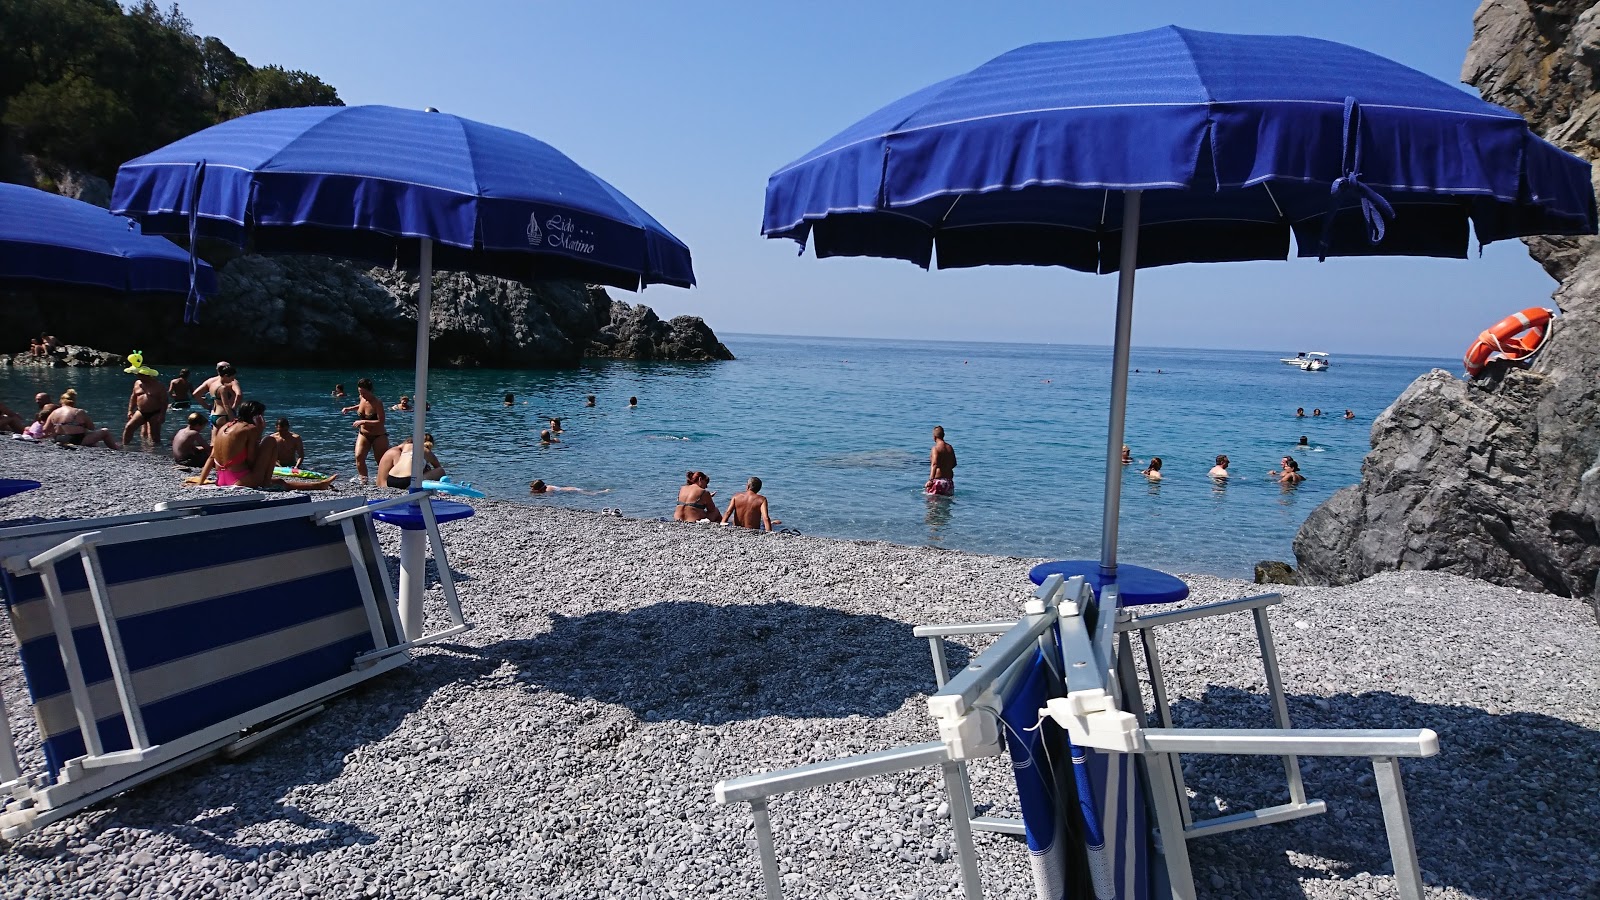 Foto de Spiaggia D' A Scala con muy limpio nivel de limpieza